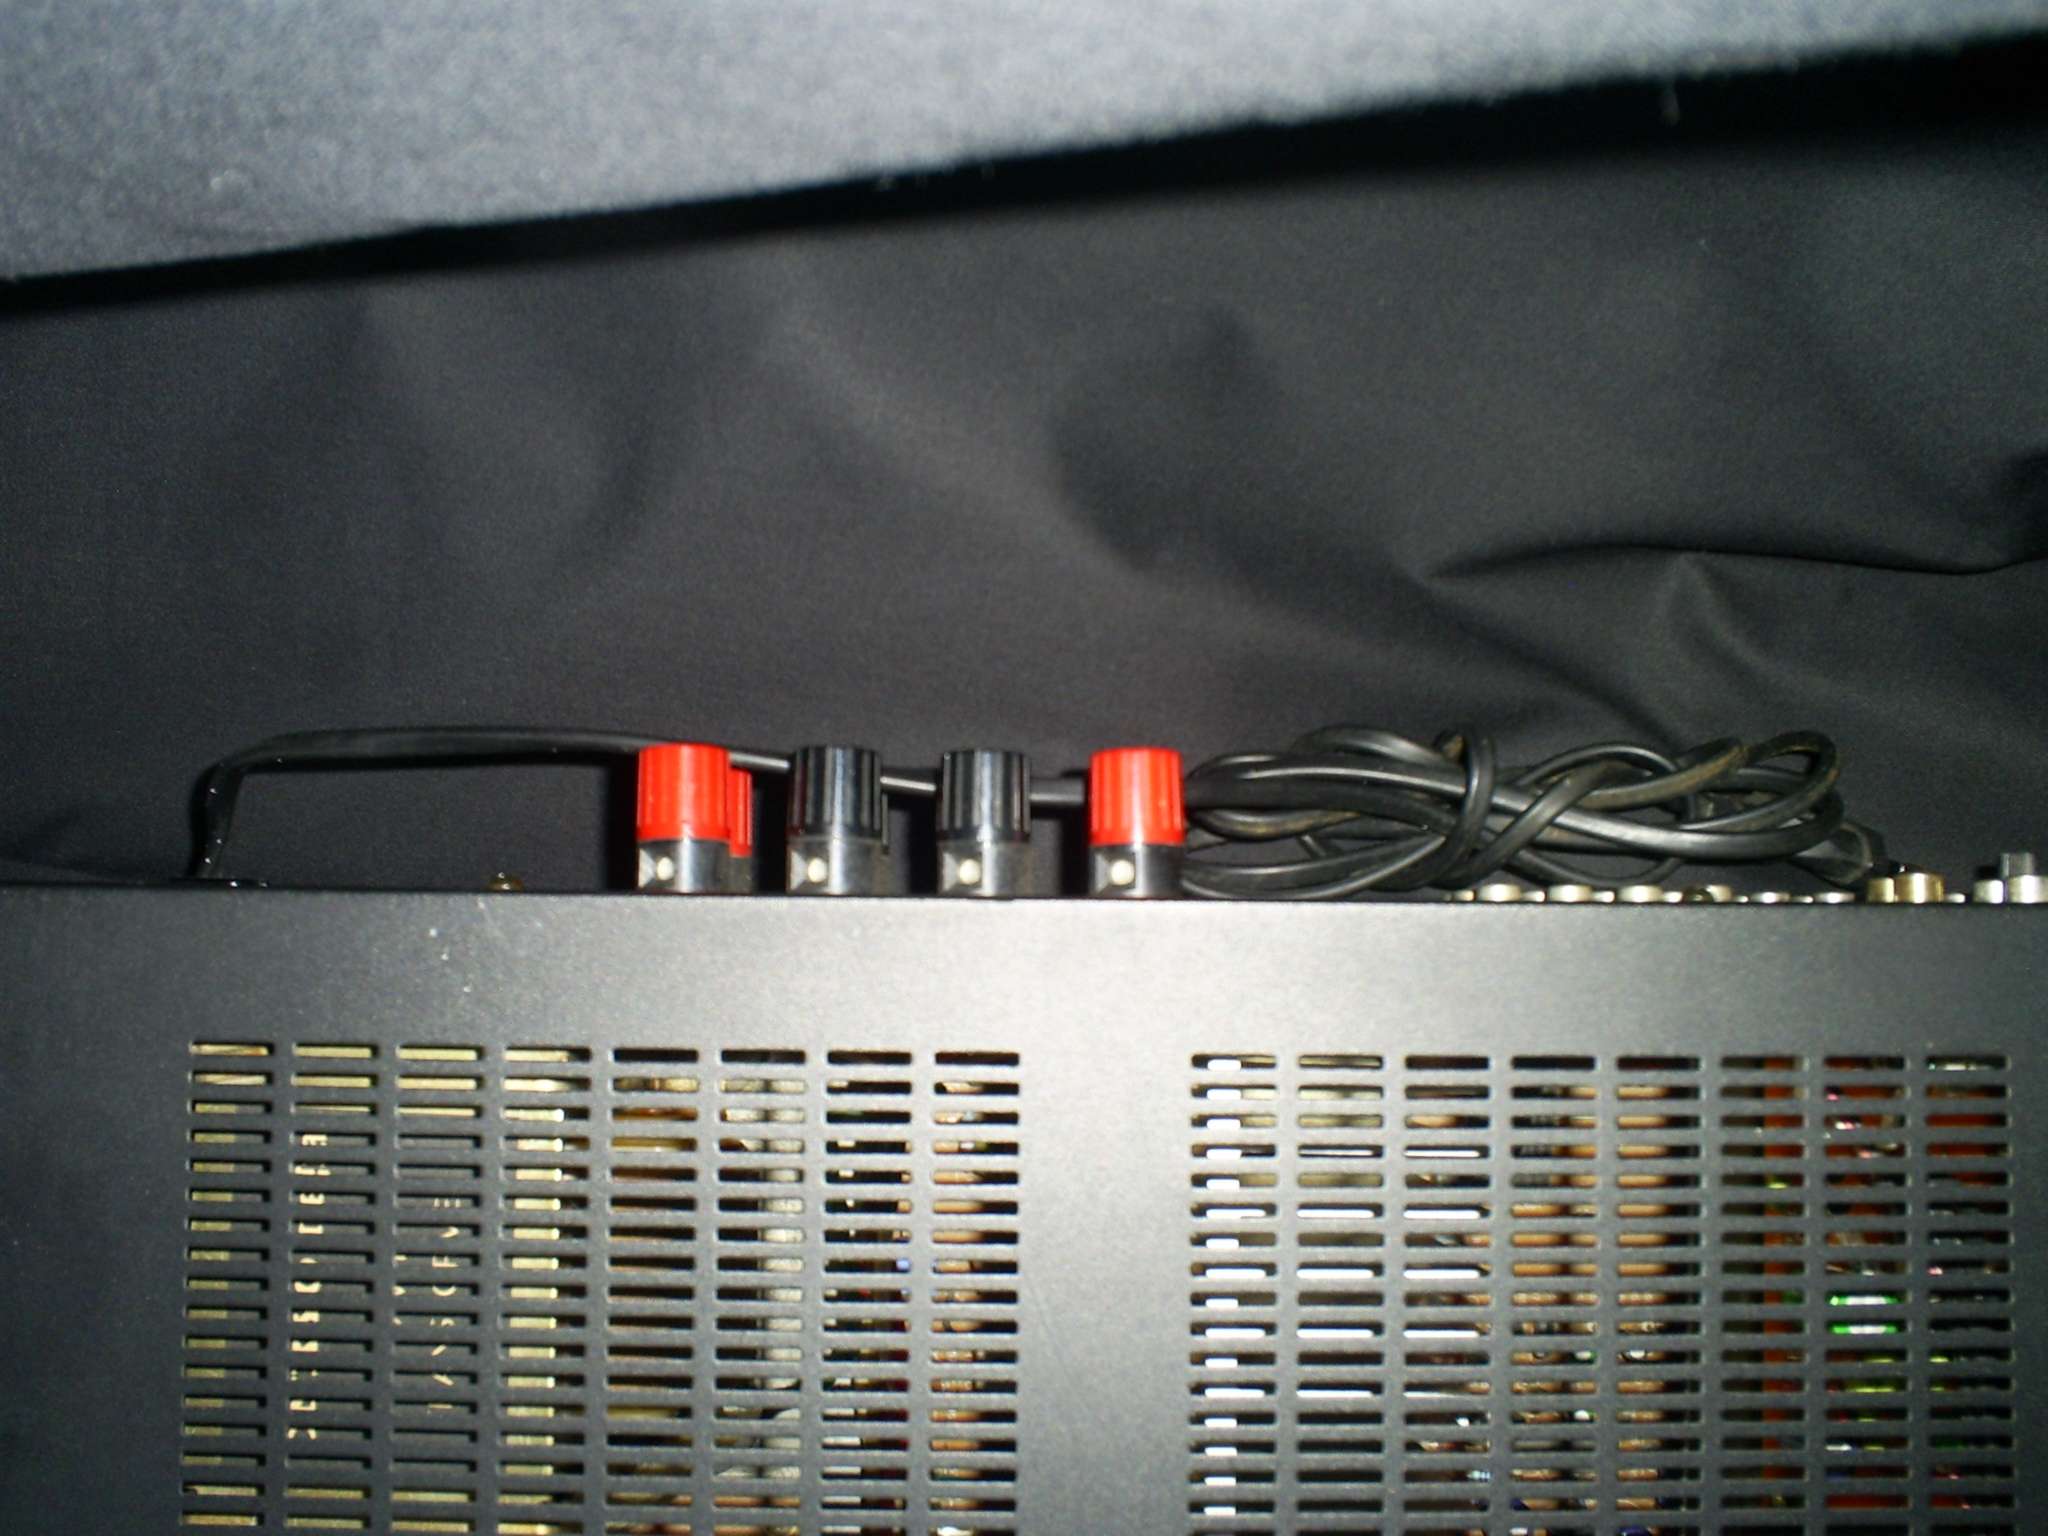 Audiotoestel Stap 2 Bij versterker: speakerconnectoren vastdraaien